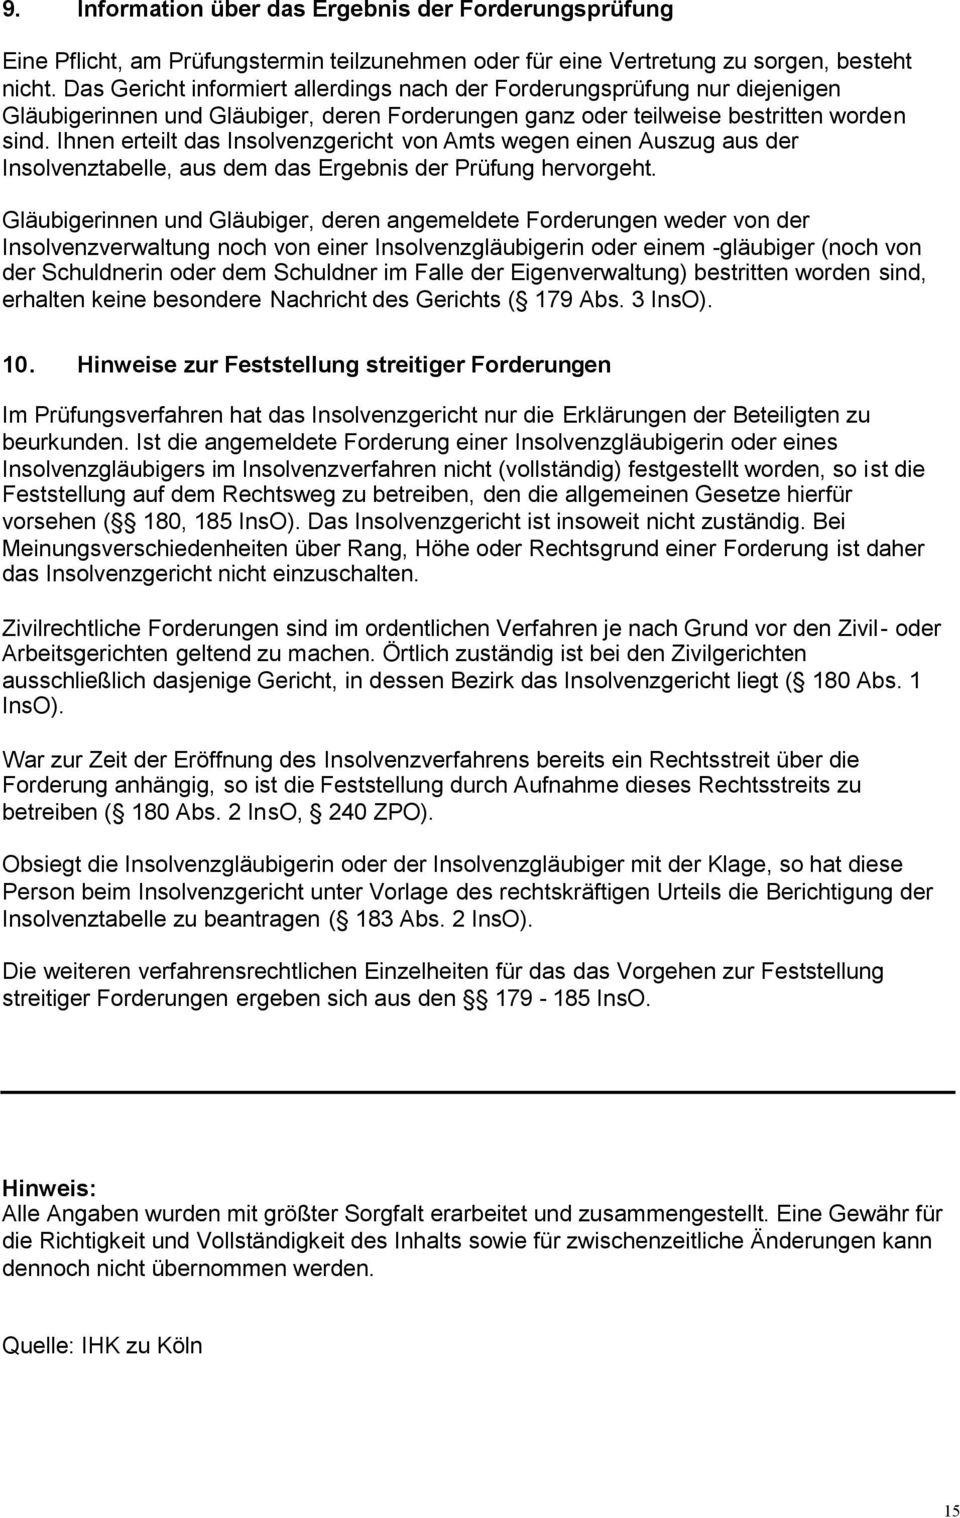 Insolvenzordnung Merkblatt Fur Glaubiger Pdf Kostenfreier Download